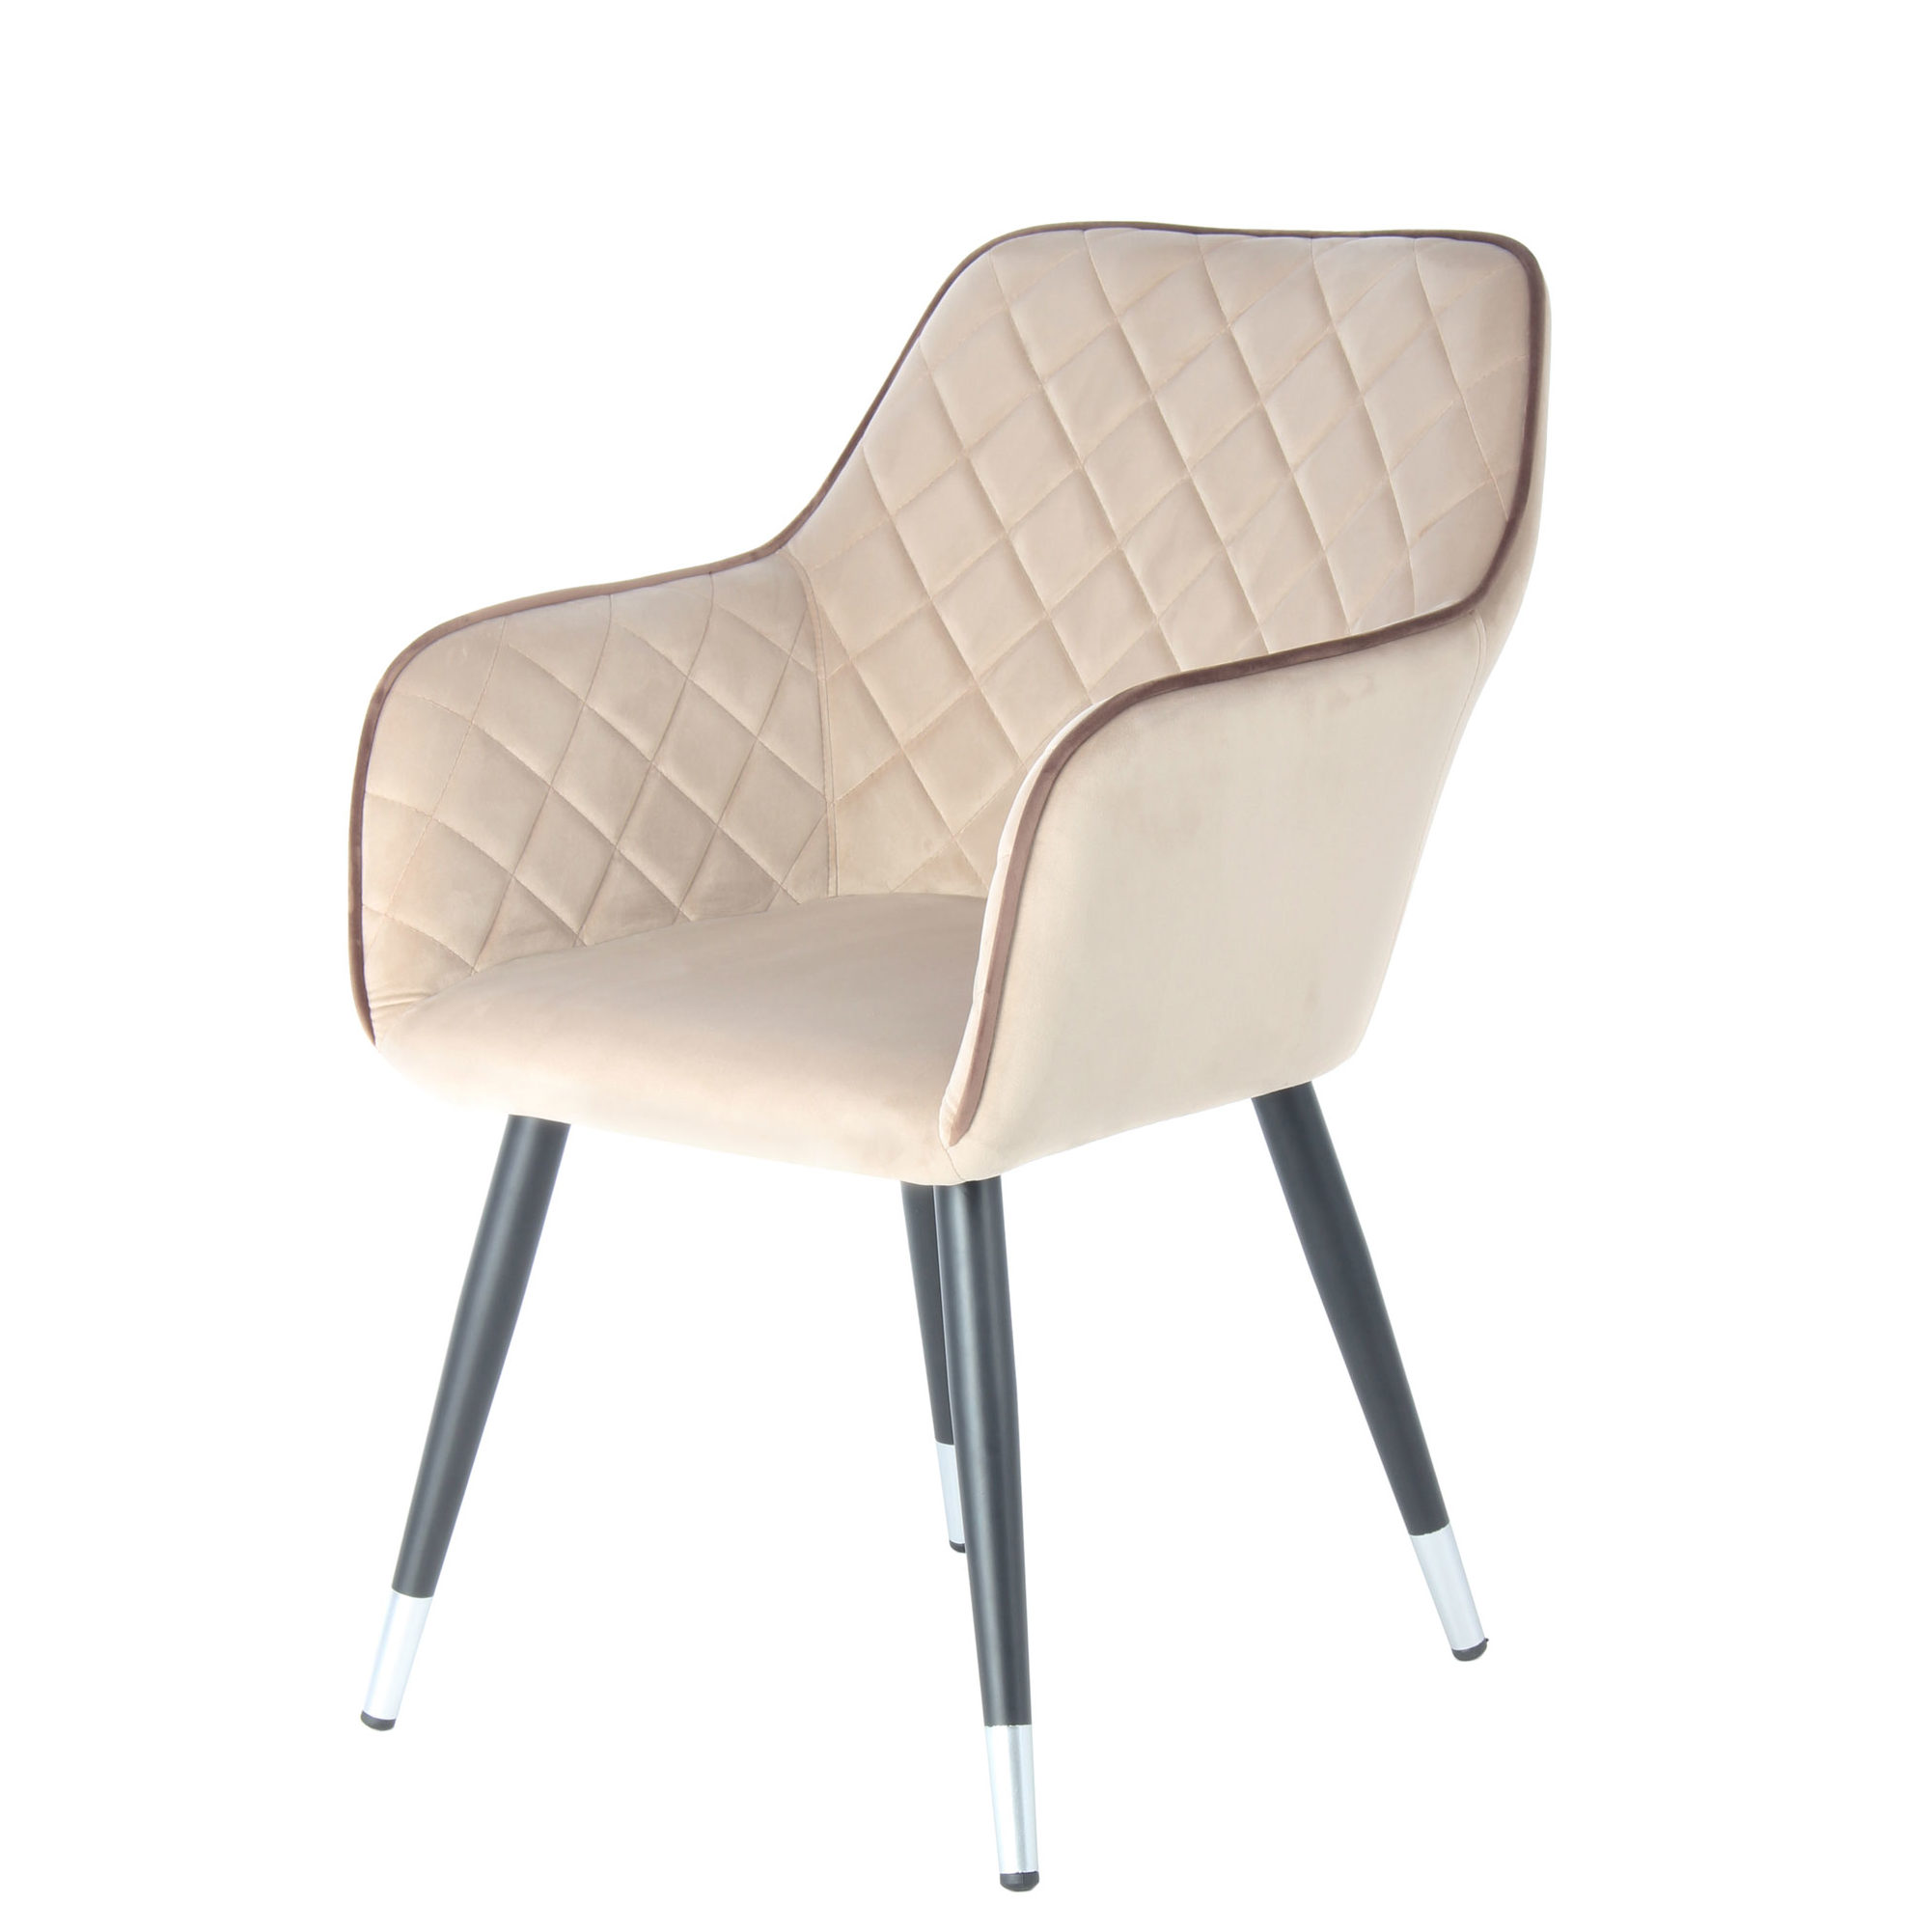 Buiten adem ontwerp Metafoor Beige velvet stoelen kopen? | Eetkamerstoelen | kameraankleden.nl